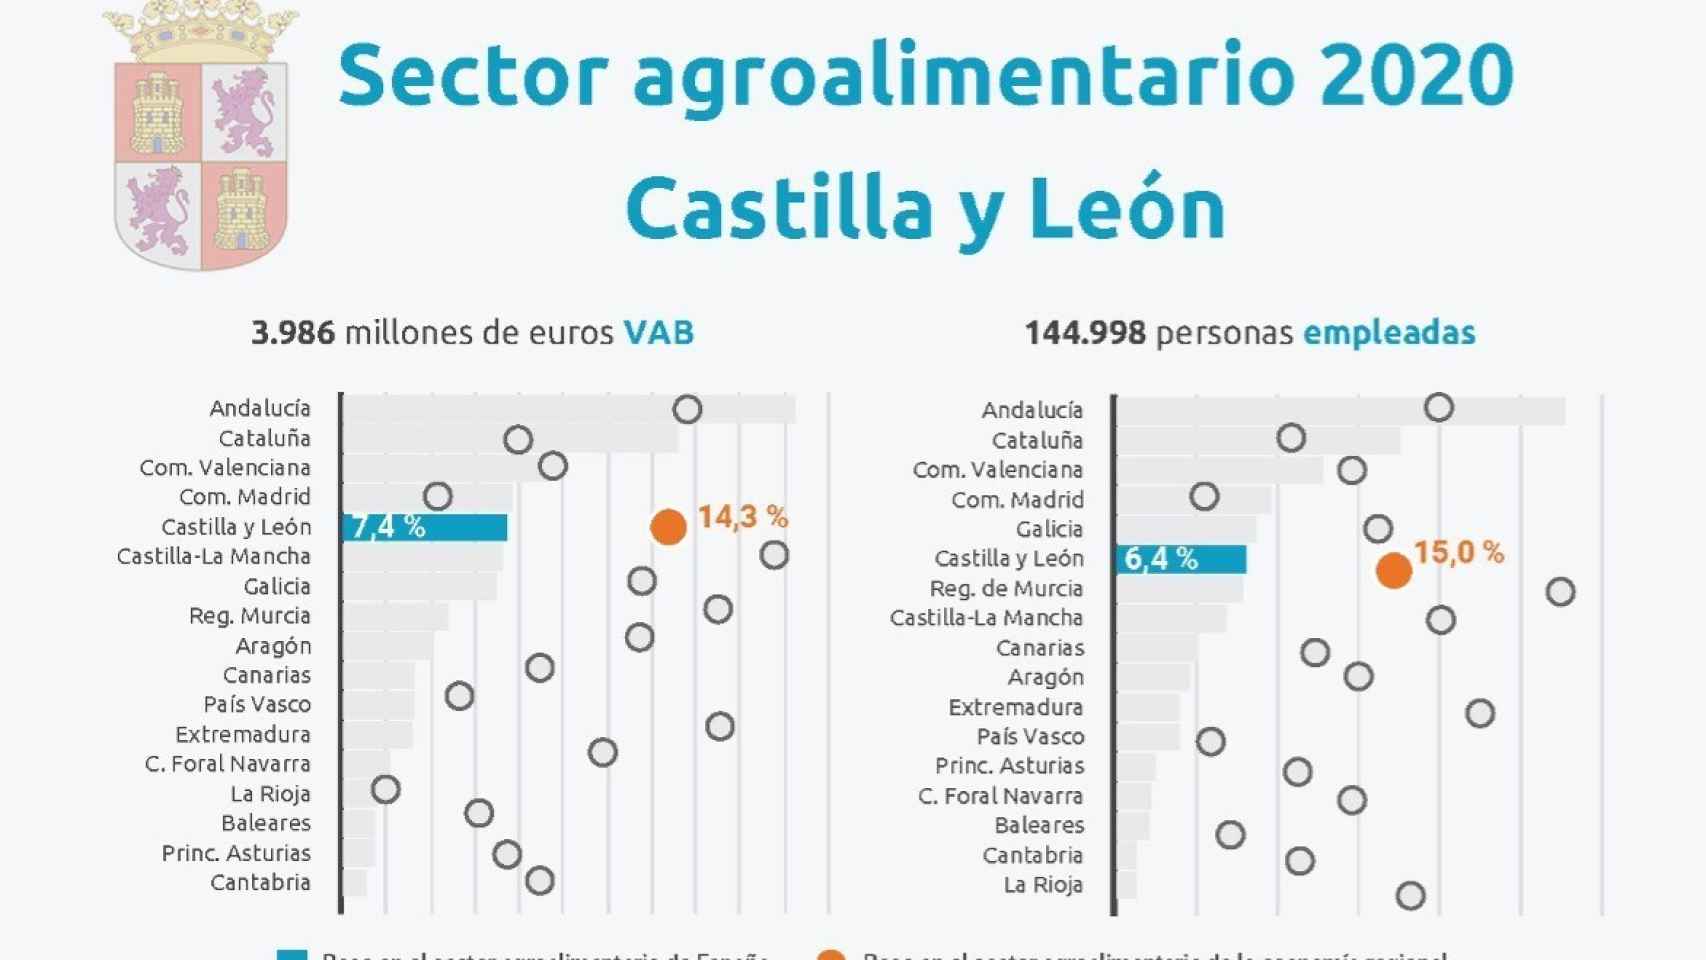 El informe hecho público por Cajamar refleja la fortaleza del sector agroalimentario en Castilla y León.